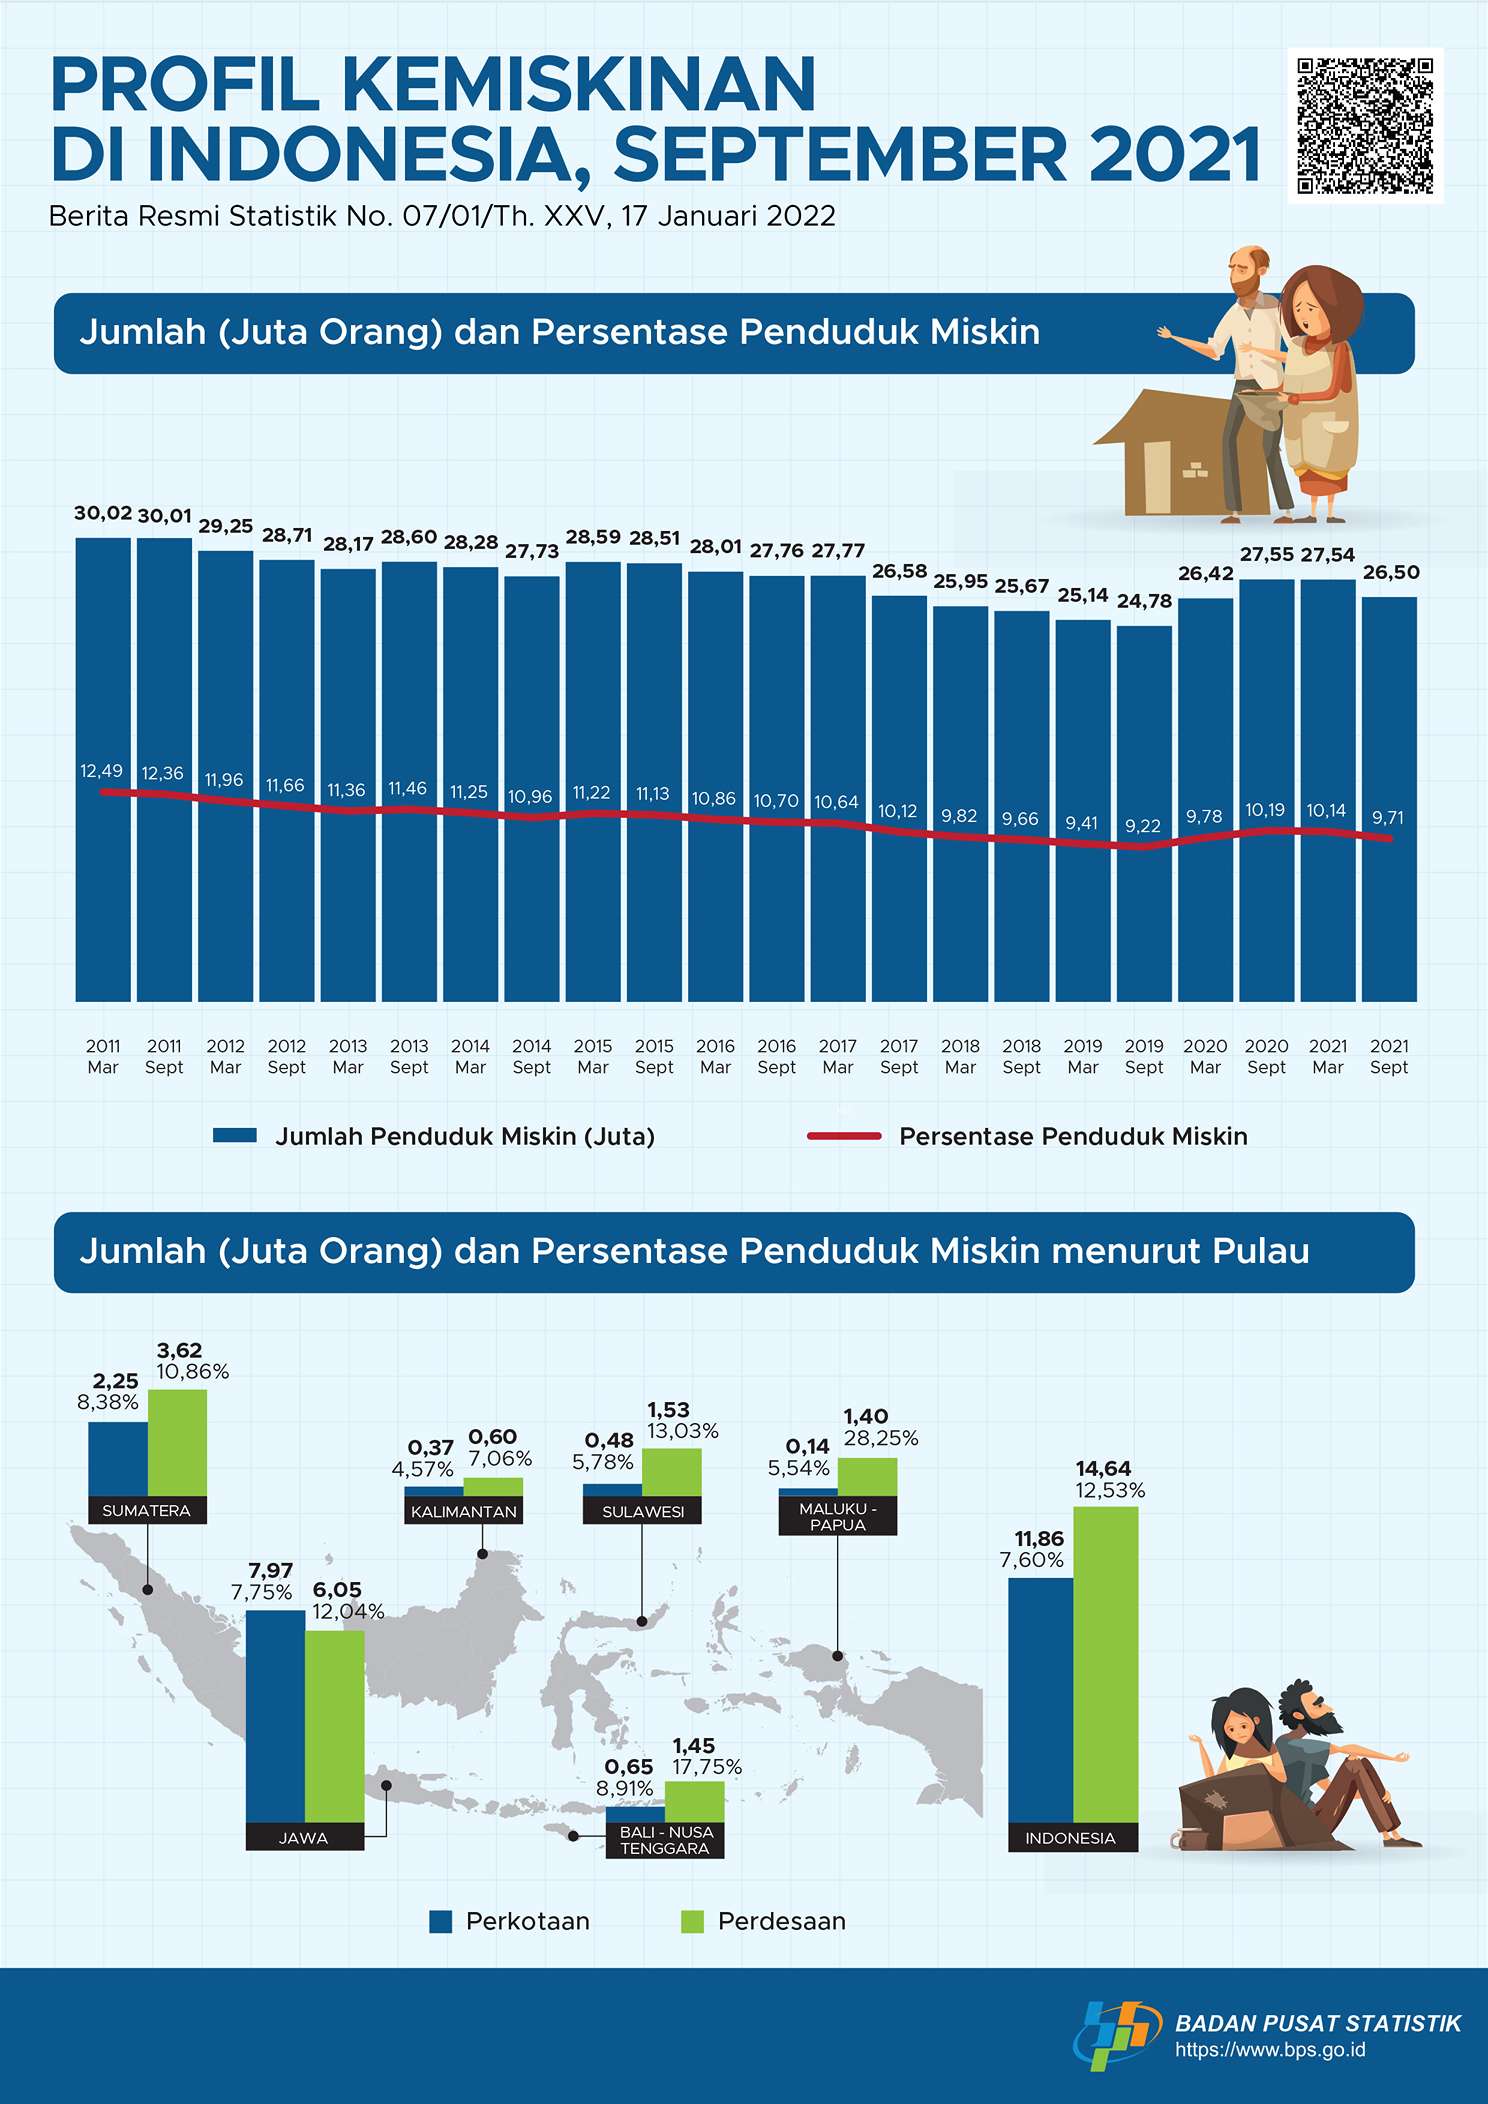 Total penduduk indonesia 2021